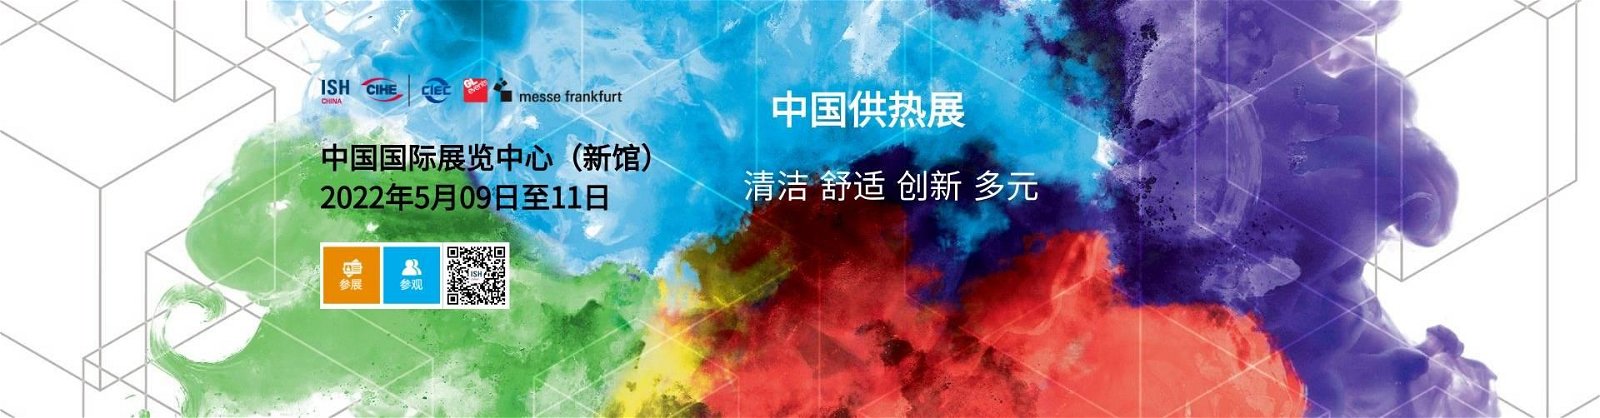 2024北京暖通展北京國際供熱展覽會ISH中國供熱展會 2